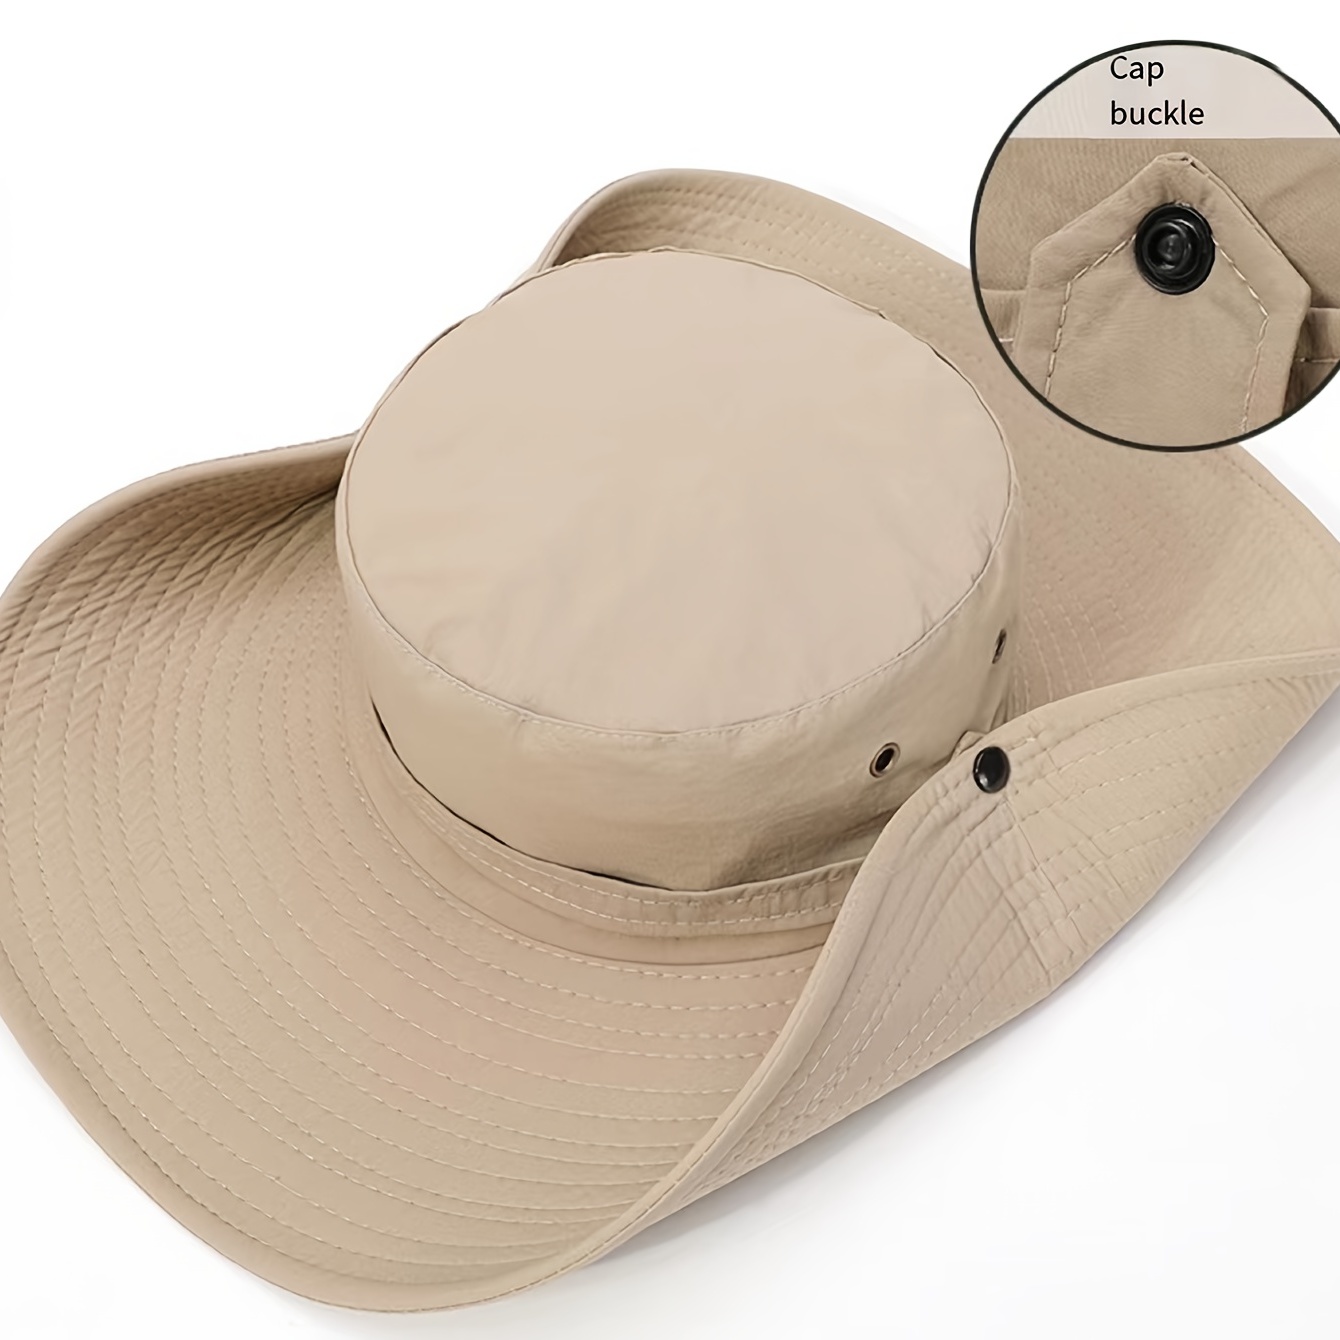 Mountain Warehouse Sombrero de pescador para hombre, gorra de verano  transpirable